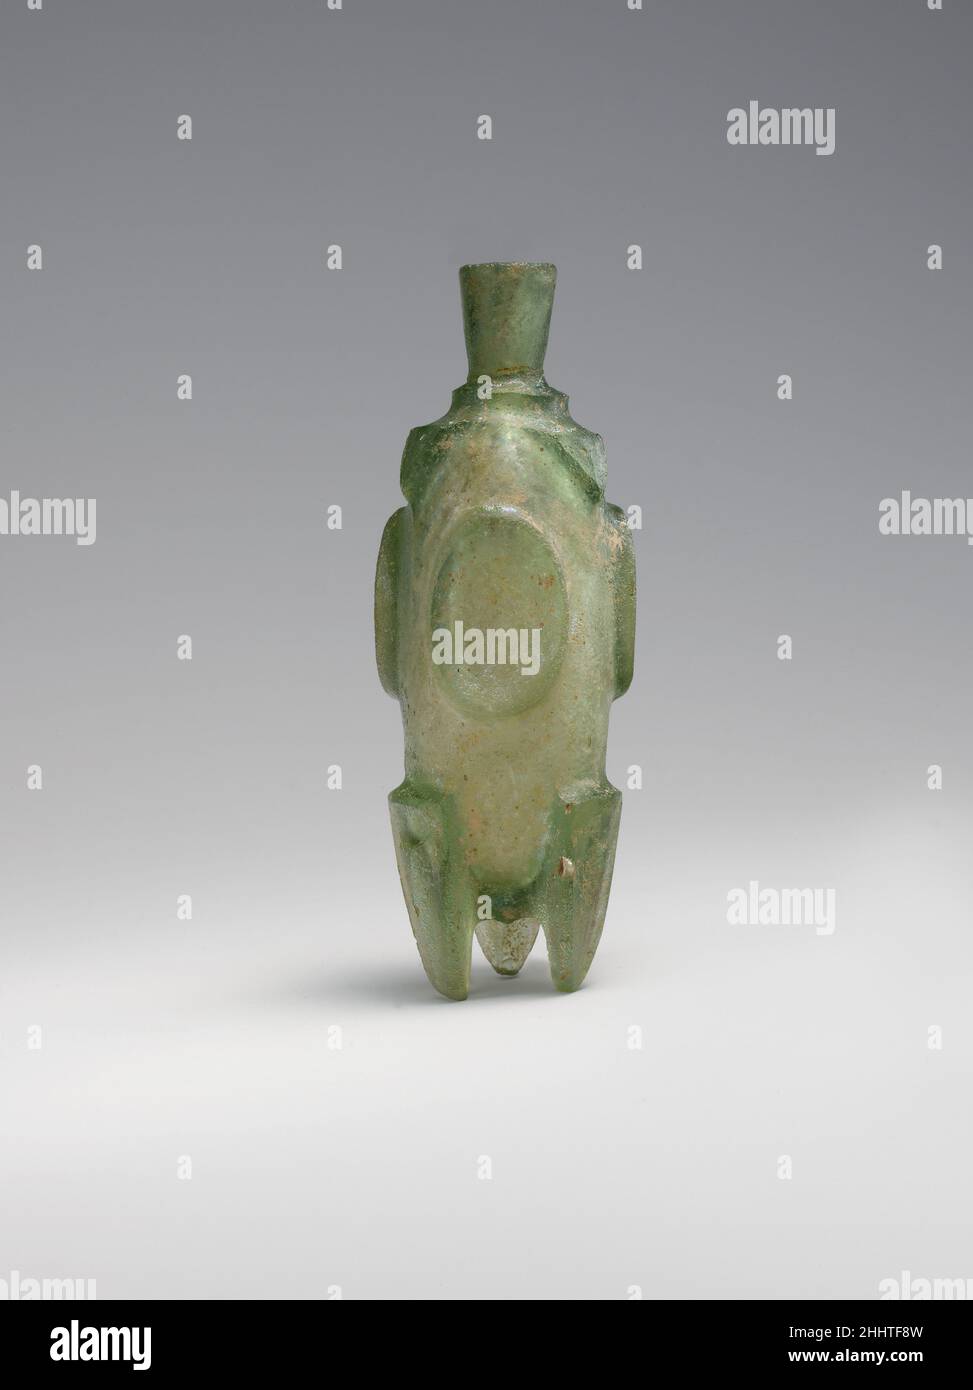 Fiole « Molar » 8th–9th siècle cette bouteille a été découpée en roue à partir d'un bloc rectangulaire de verre, puis un mince canal a été percé au milieu, rempli de kohl ou d'huile parfumée.L'objet est appelé une fiole molaire parce que ses pieds ressemblent aux racines des dents molaires.Flacon « Molar ».8th–9th siècle.Verre, vert; moulé ou soufflé, coupé.Attribué probablement à l'Iran.Verre Banque D'Images